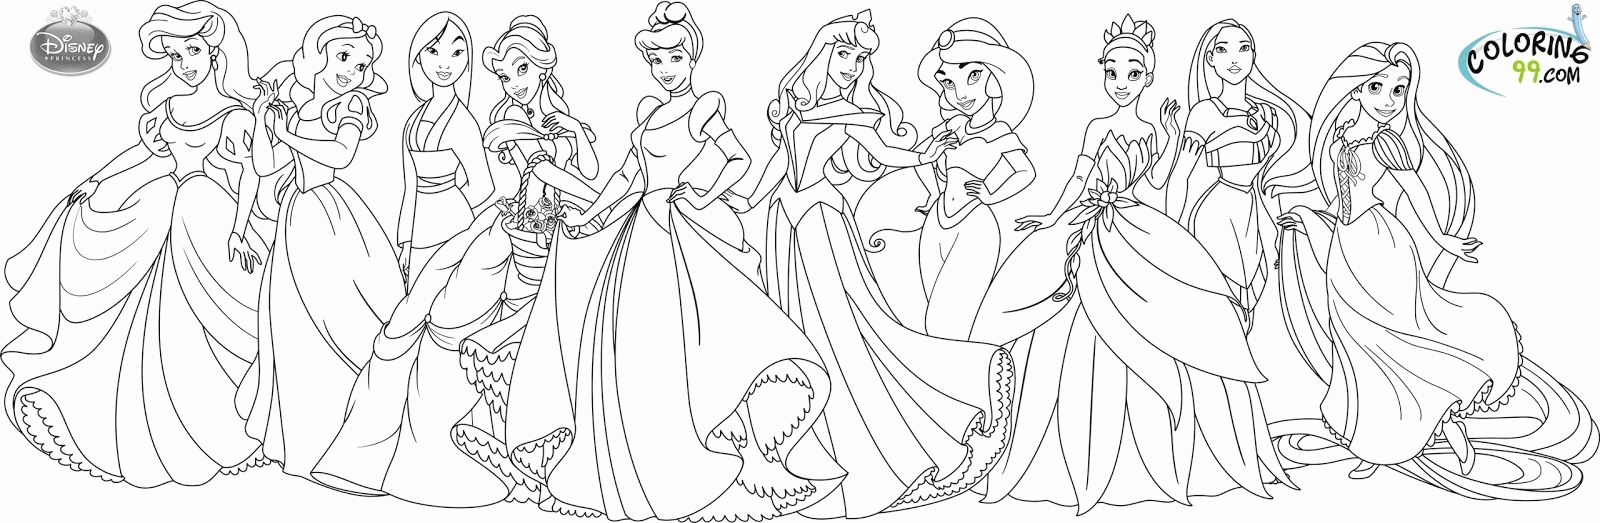 Disney Princess Cinderella Coloring Pages Games Disney Princess ...